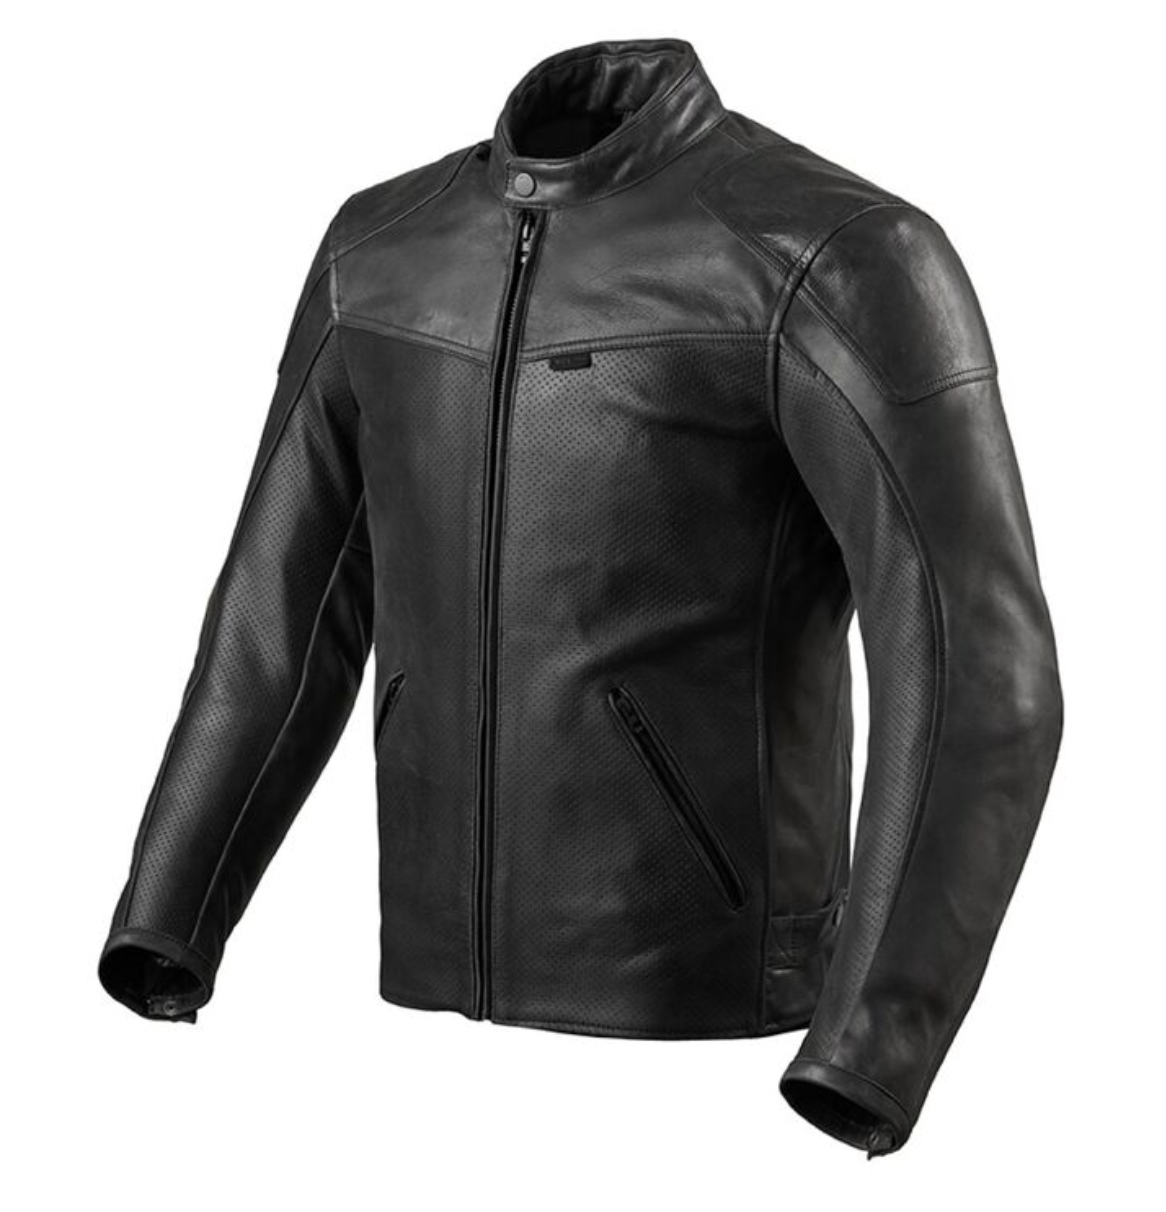 REV'IT! Mens Sherwood Air Motorcycle Jacket Black (FJL108-0010)